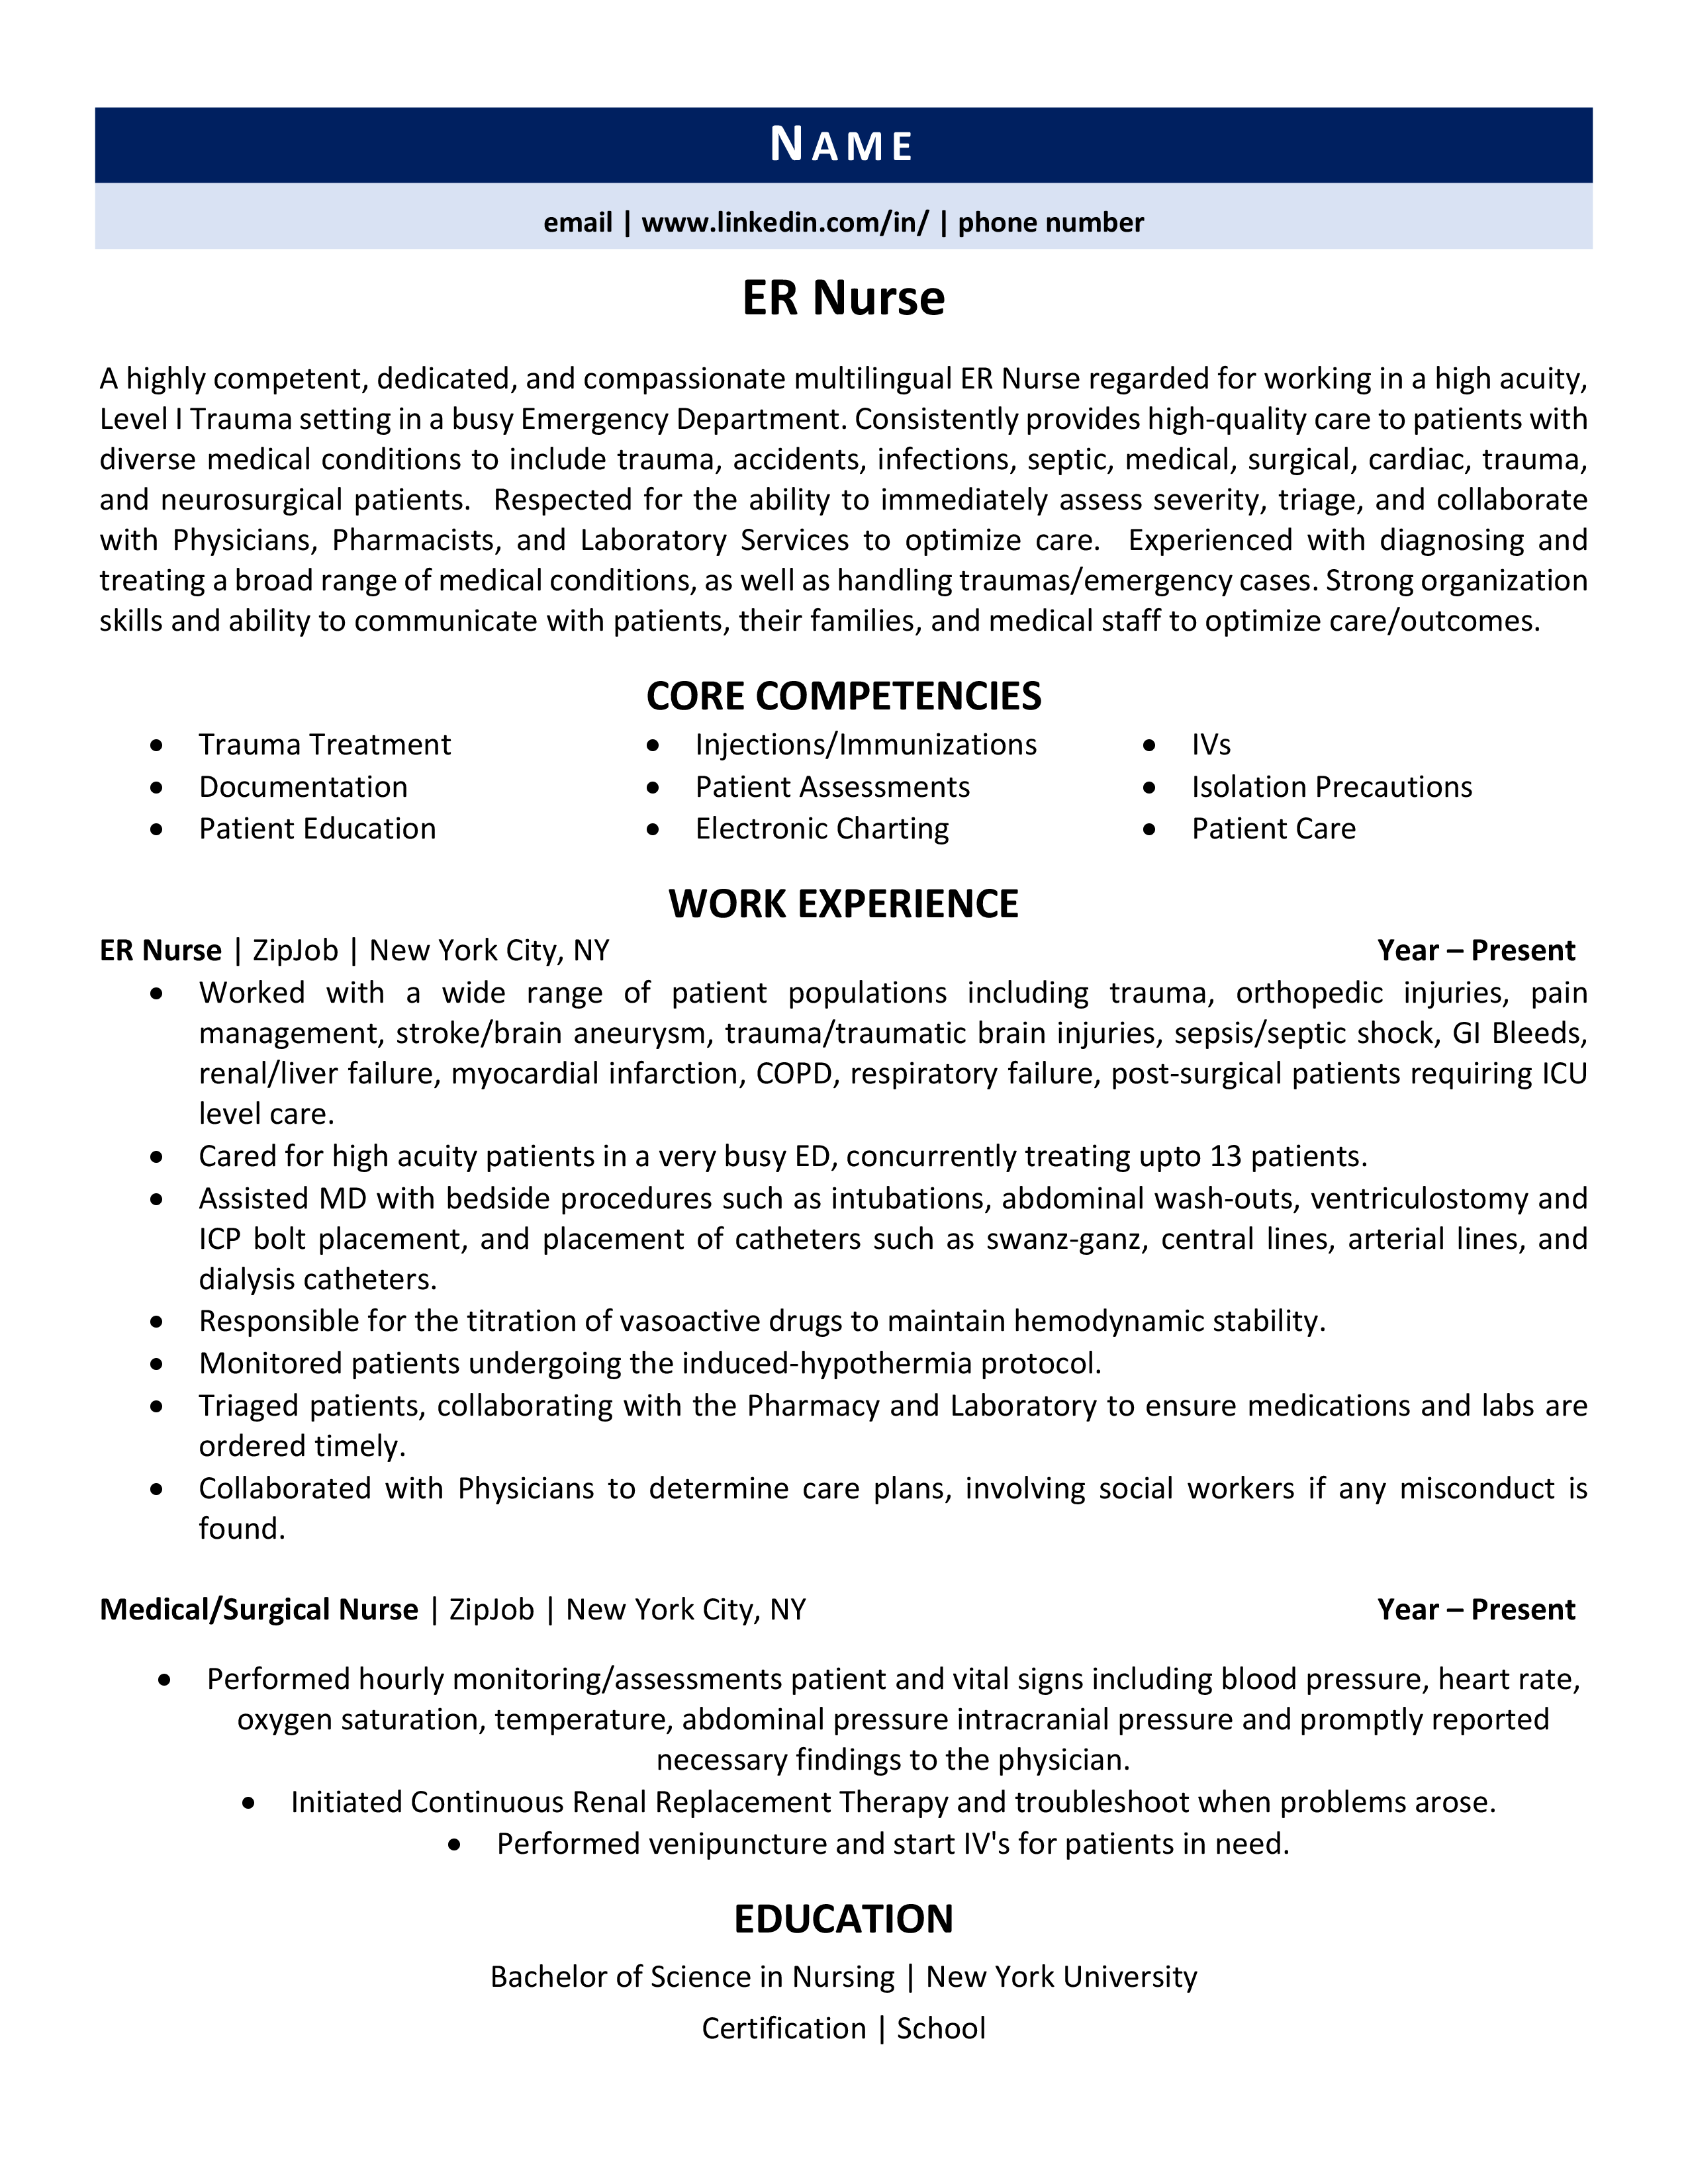 er nurse resume template